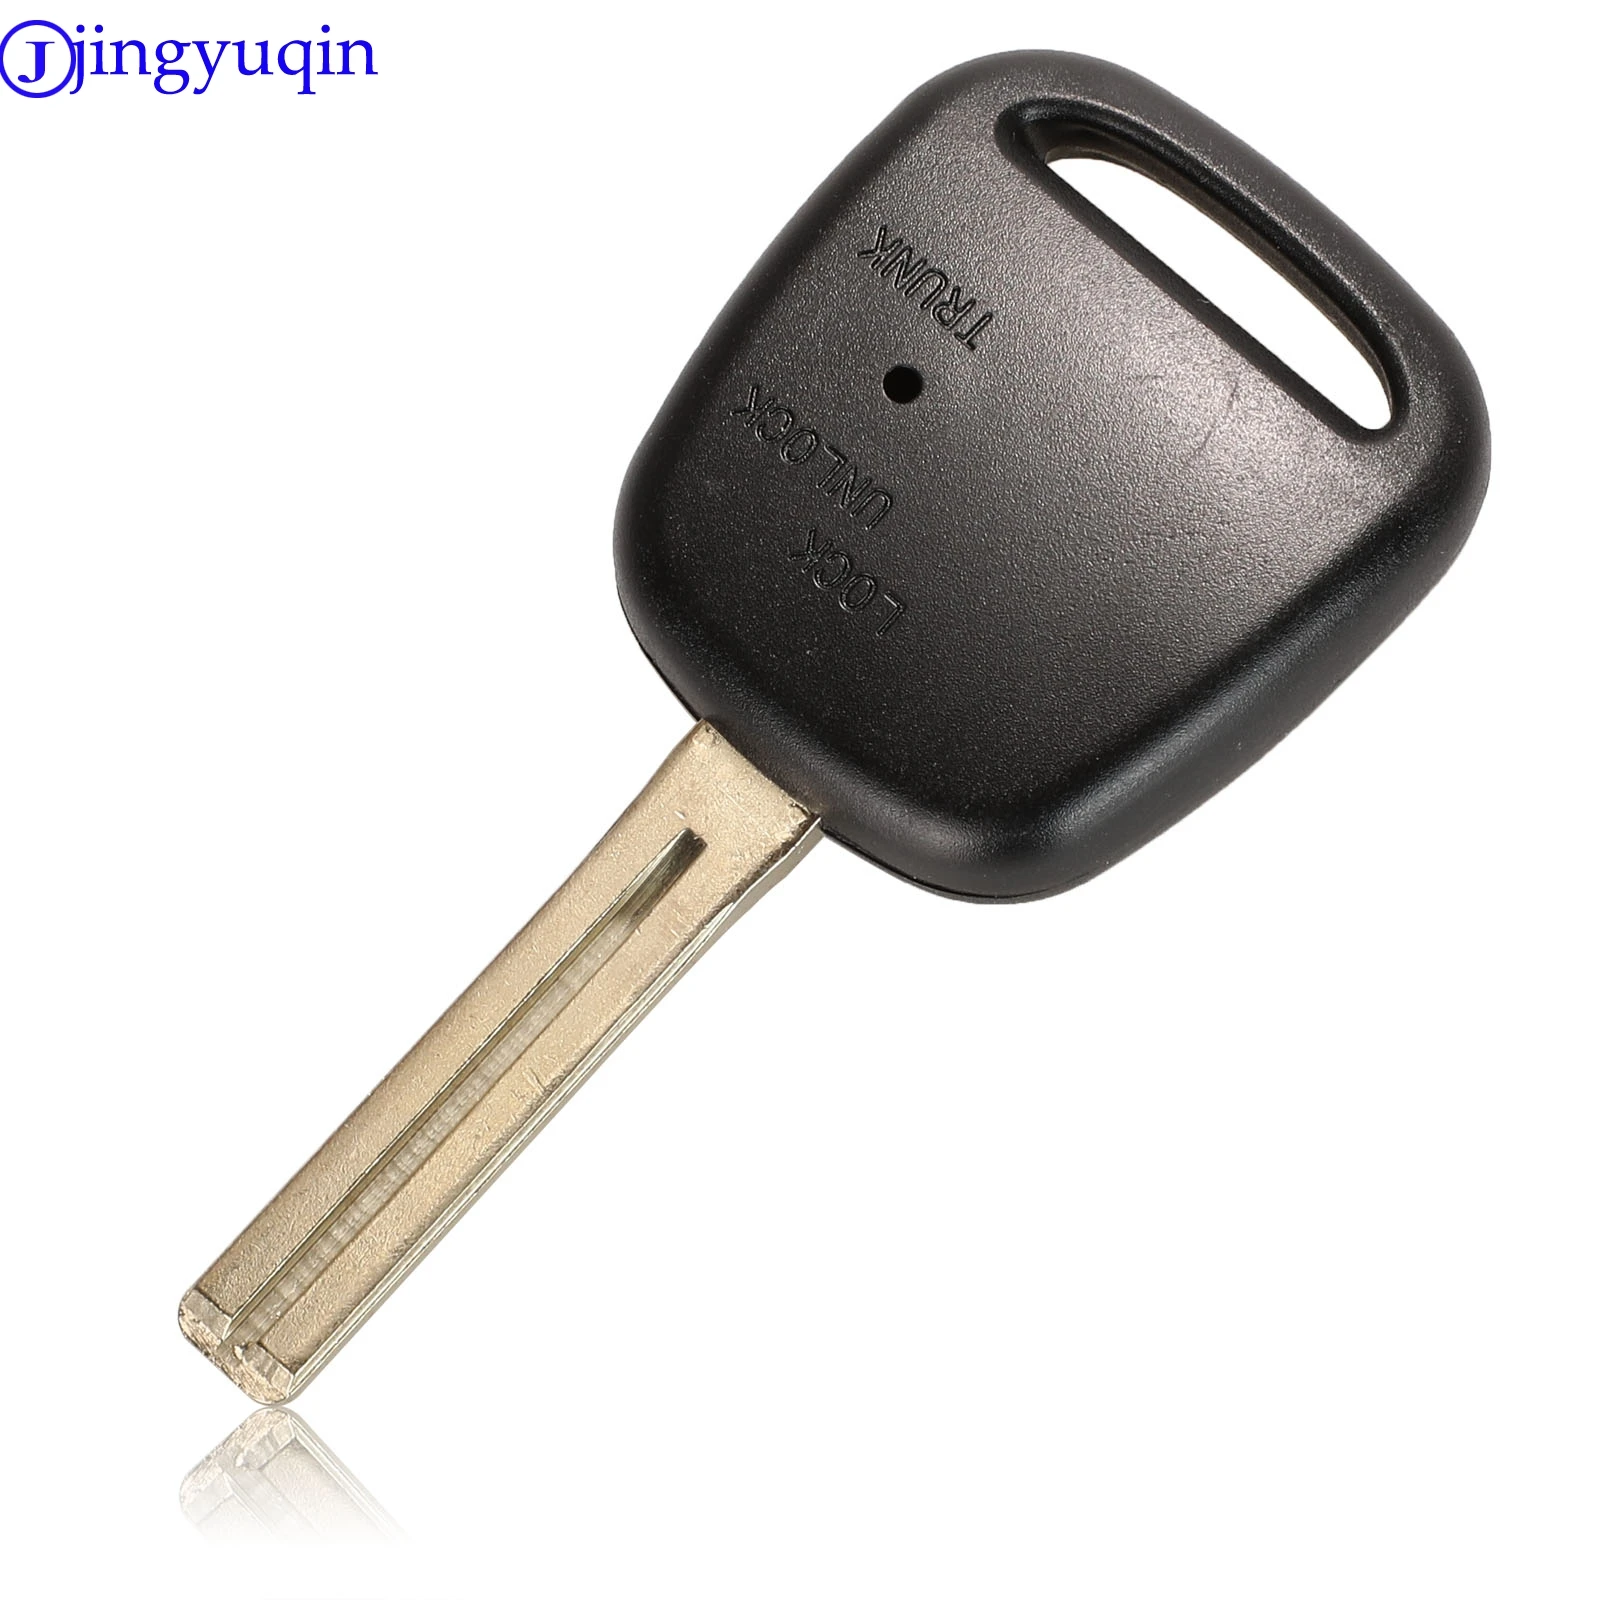 Чехол для дистанционного ключа jingyuqin с лезвием TOY48 и 2 боковыми кнопками для Toyota Carina Estima Harrier Estina Corolla Celica